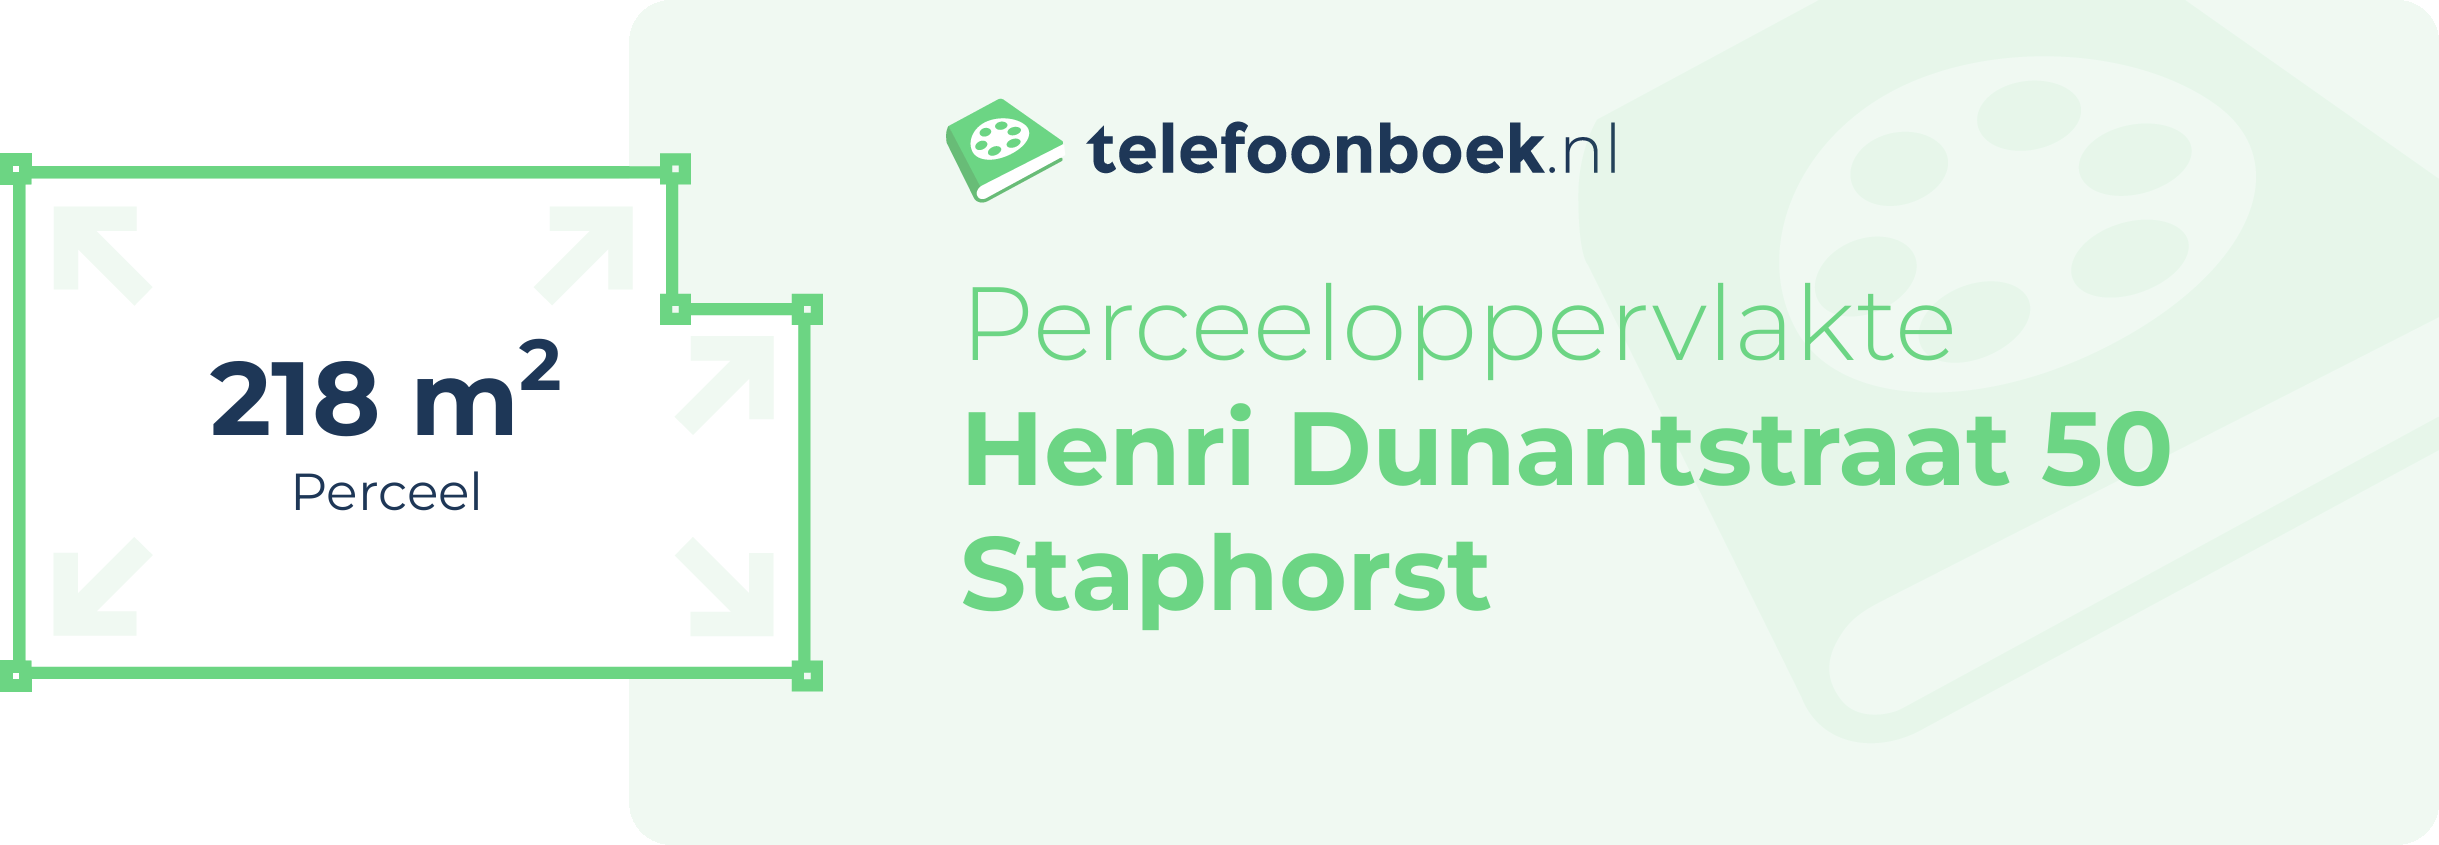 Perceeloppervlakte Henri Dunantstraat 50 Staphorst